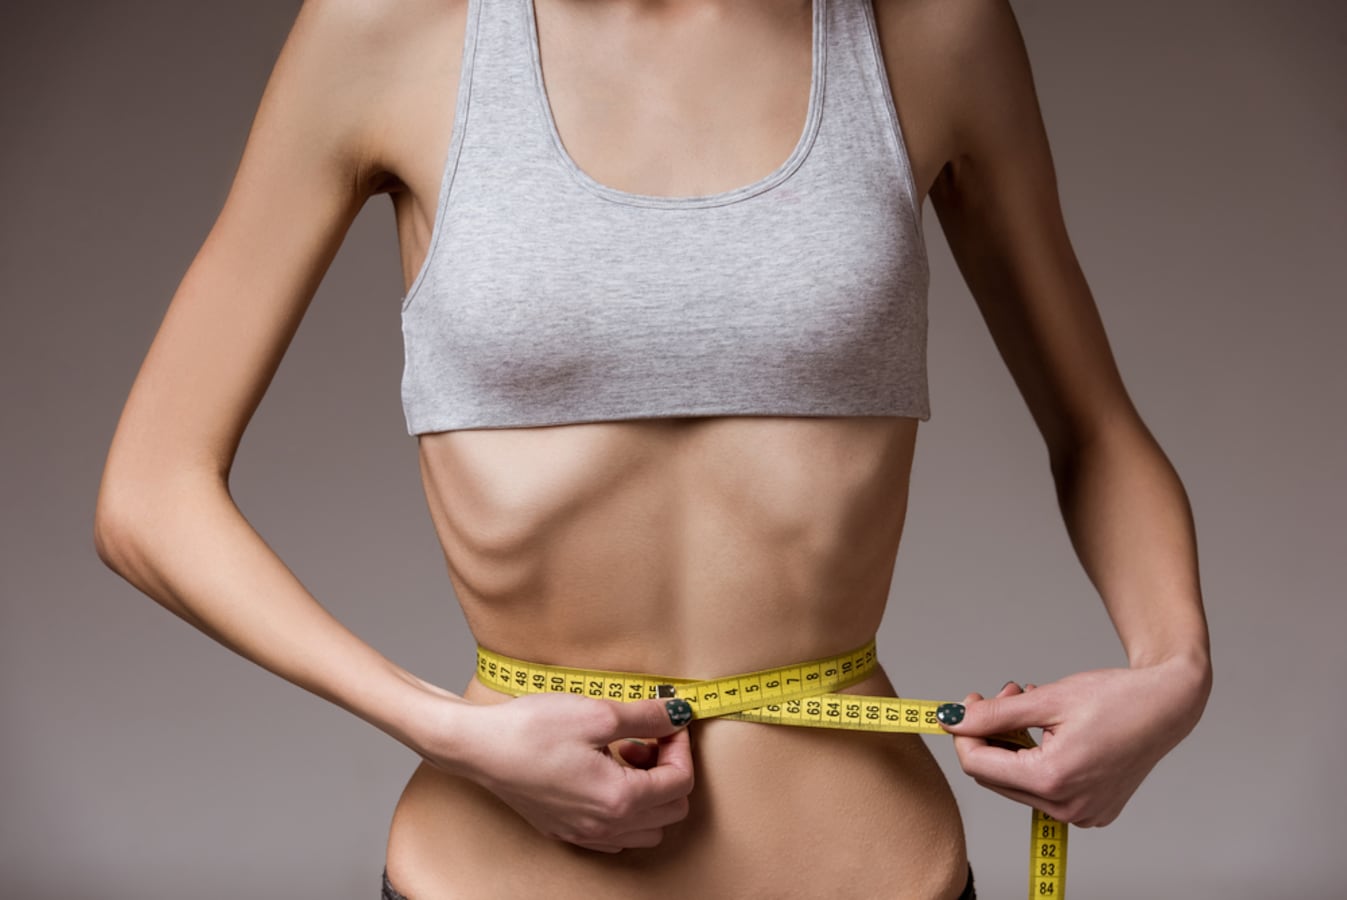 シンデレラ体重 は危険 女子高生の理想体重とダイエットの基本情報 ダイエットの基本 All About